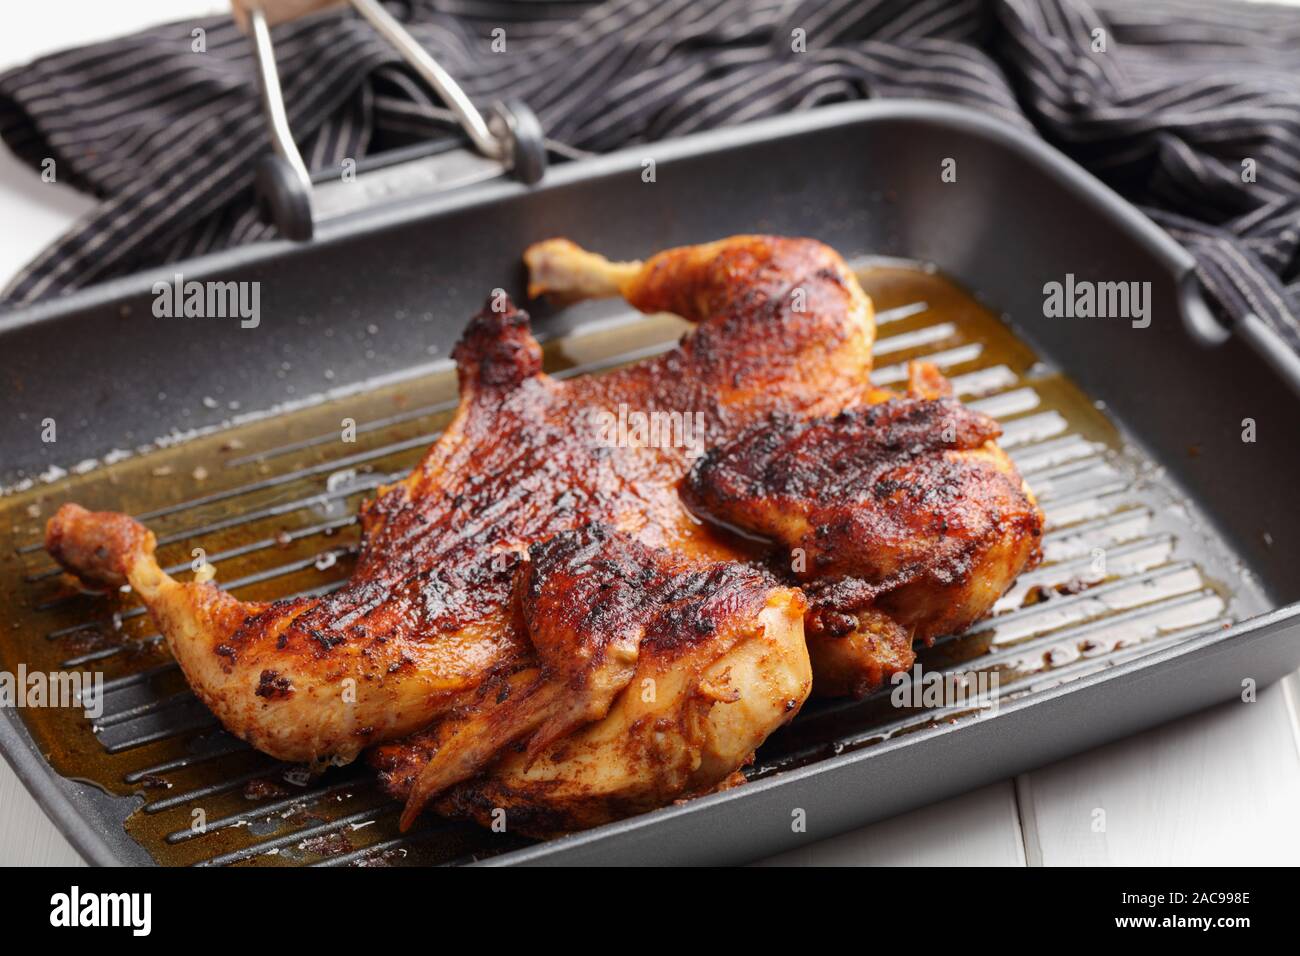 Pollo al mattone immagini e fotografie stock ad alta risoluzione - Alamy